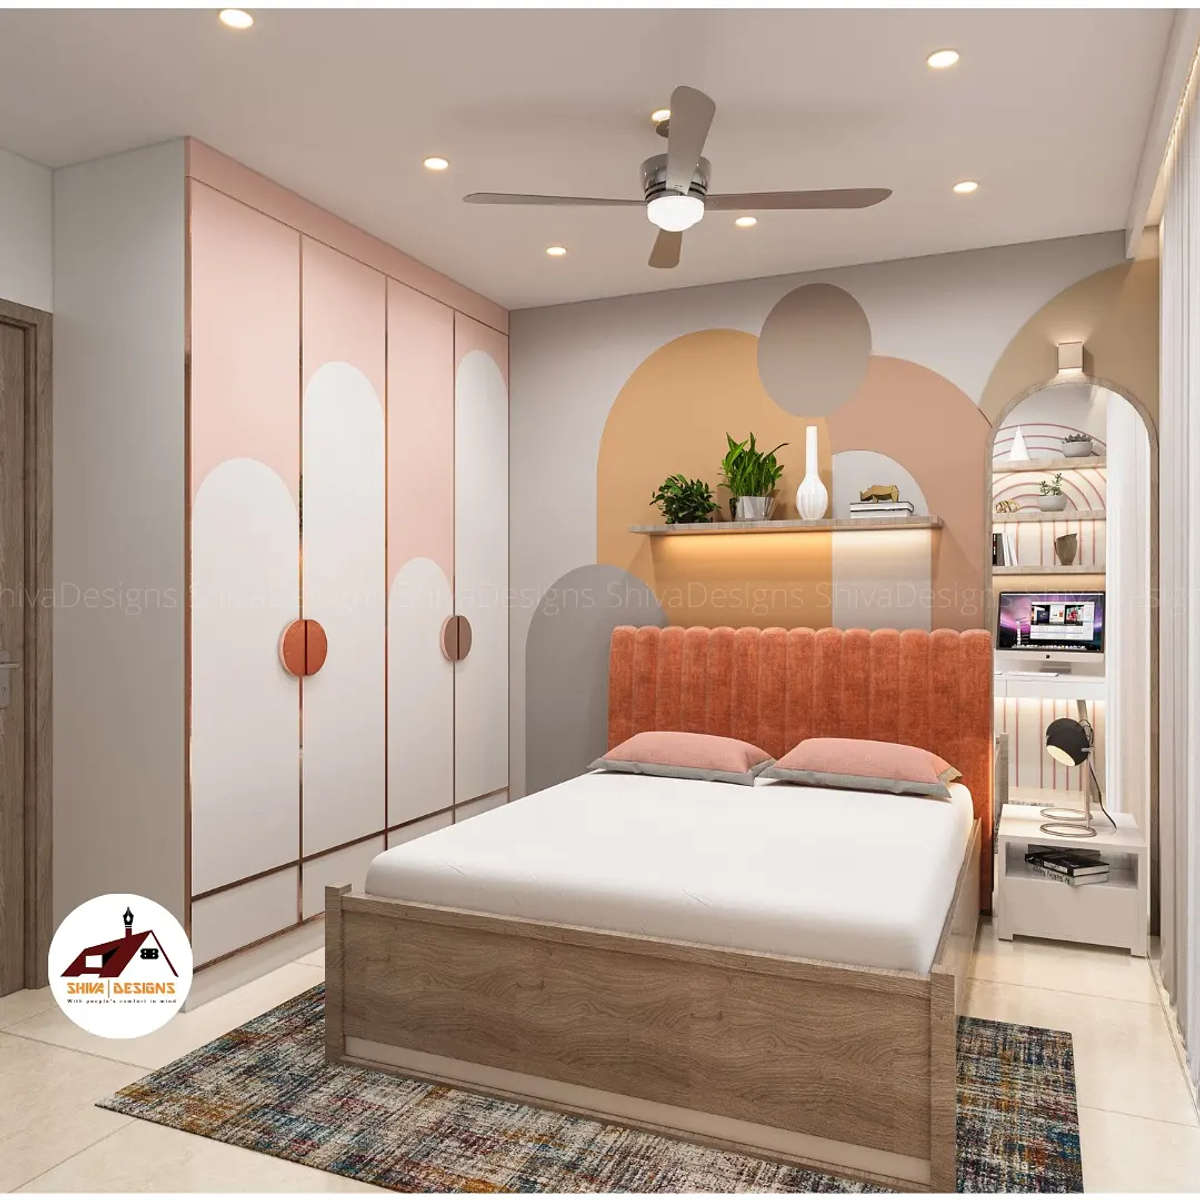 Furniture, Storage, Bedroom Designs by Architect Shiva Designs, Delhi | Kolo